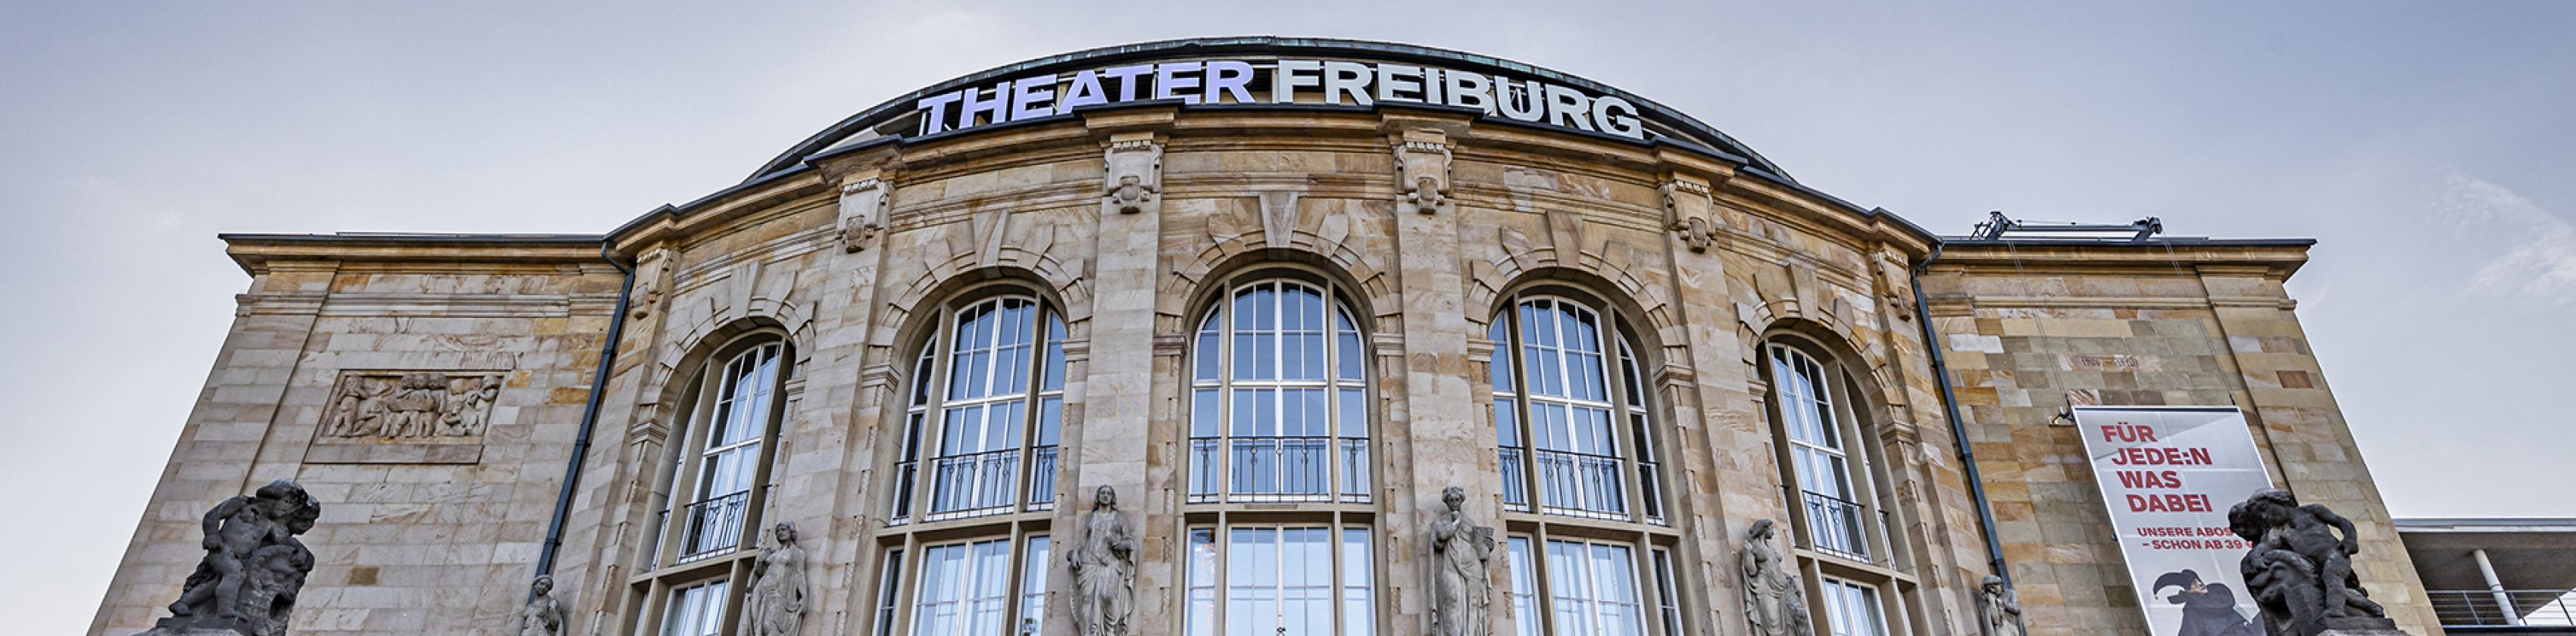 Theater-Freiburg-FWTM-Spiegelhalter.13